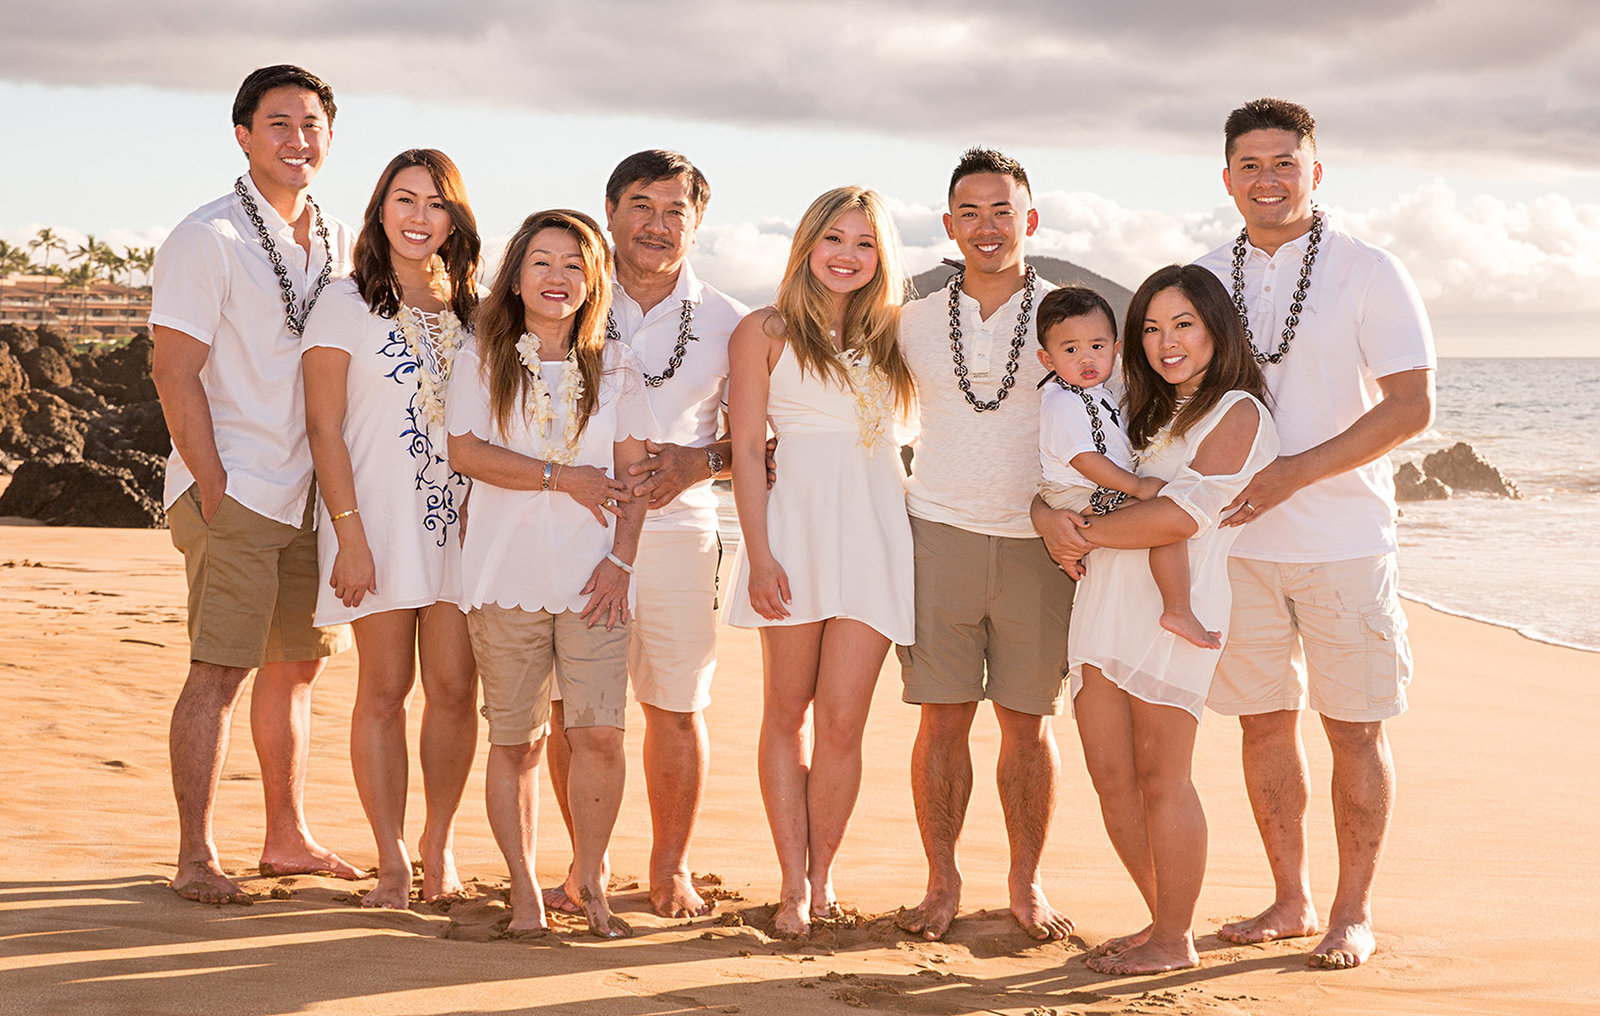 Wedding photographers on Maui | Kauai | Oahu | Big Island